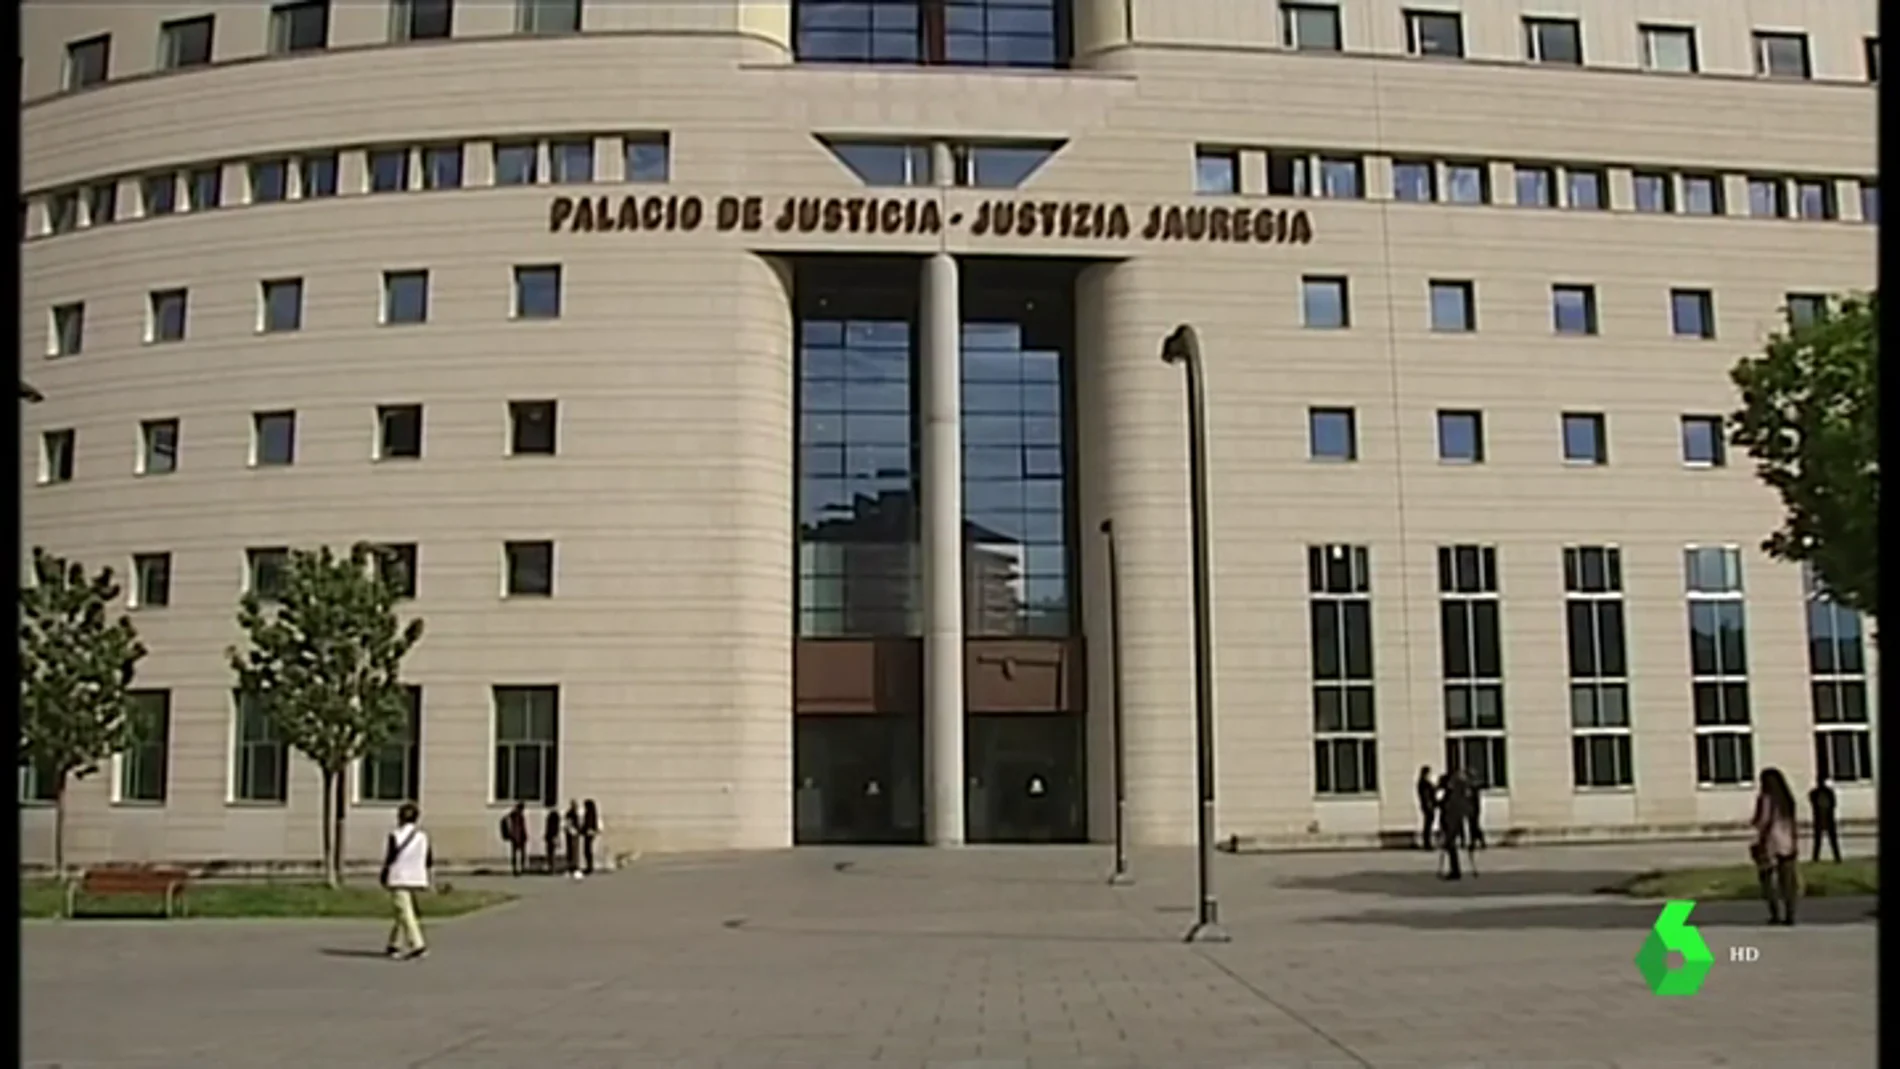 Palacio de Justicia de Pamplona